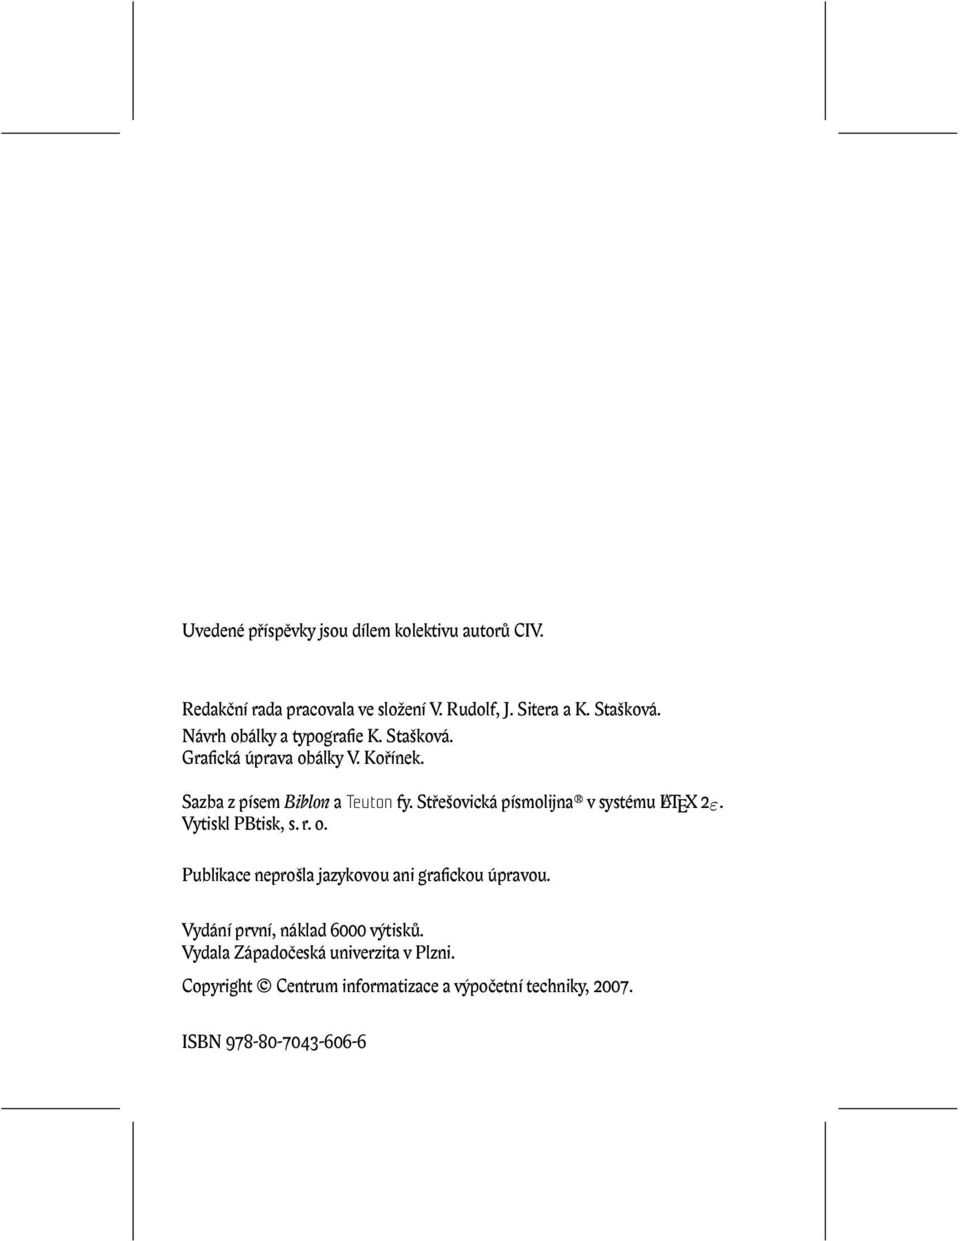 Střešovická písmolijna v systému LATEX 2ε. Vytiskl PBtisk, s. r. o. Publikace neprošla jazykovou ani grafickou úpravou.